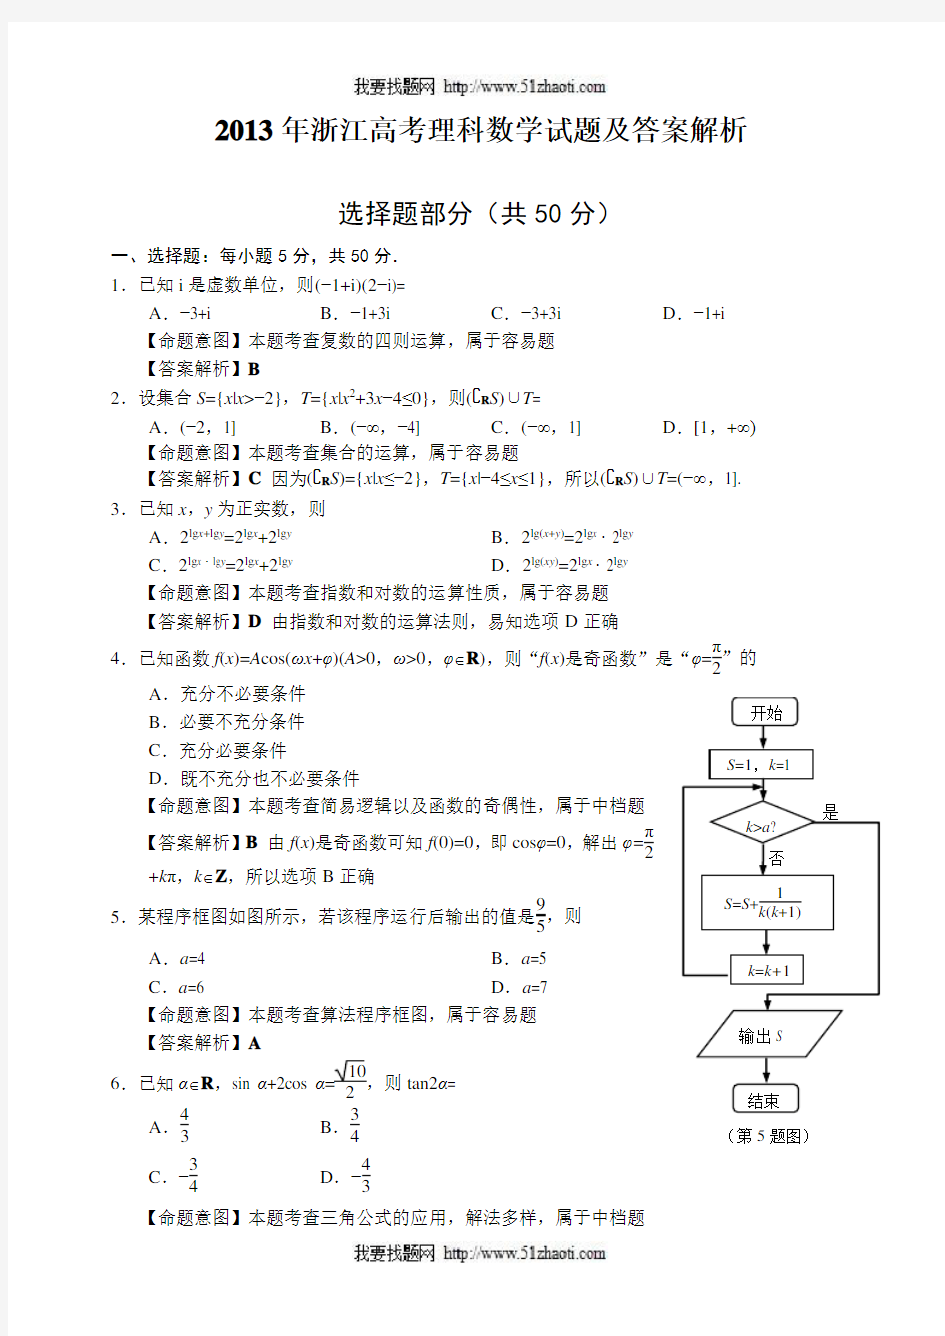 2013年高考理科数学浙江卷试题及答案解析